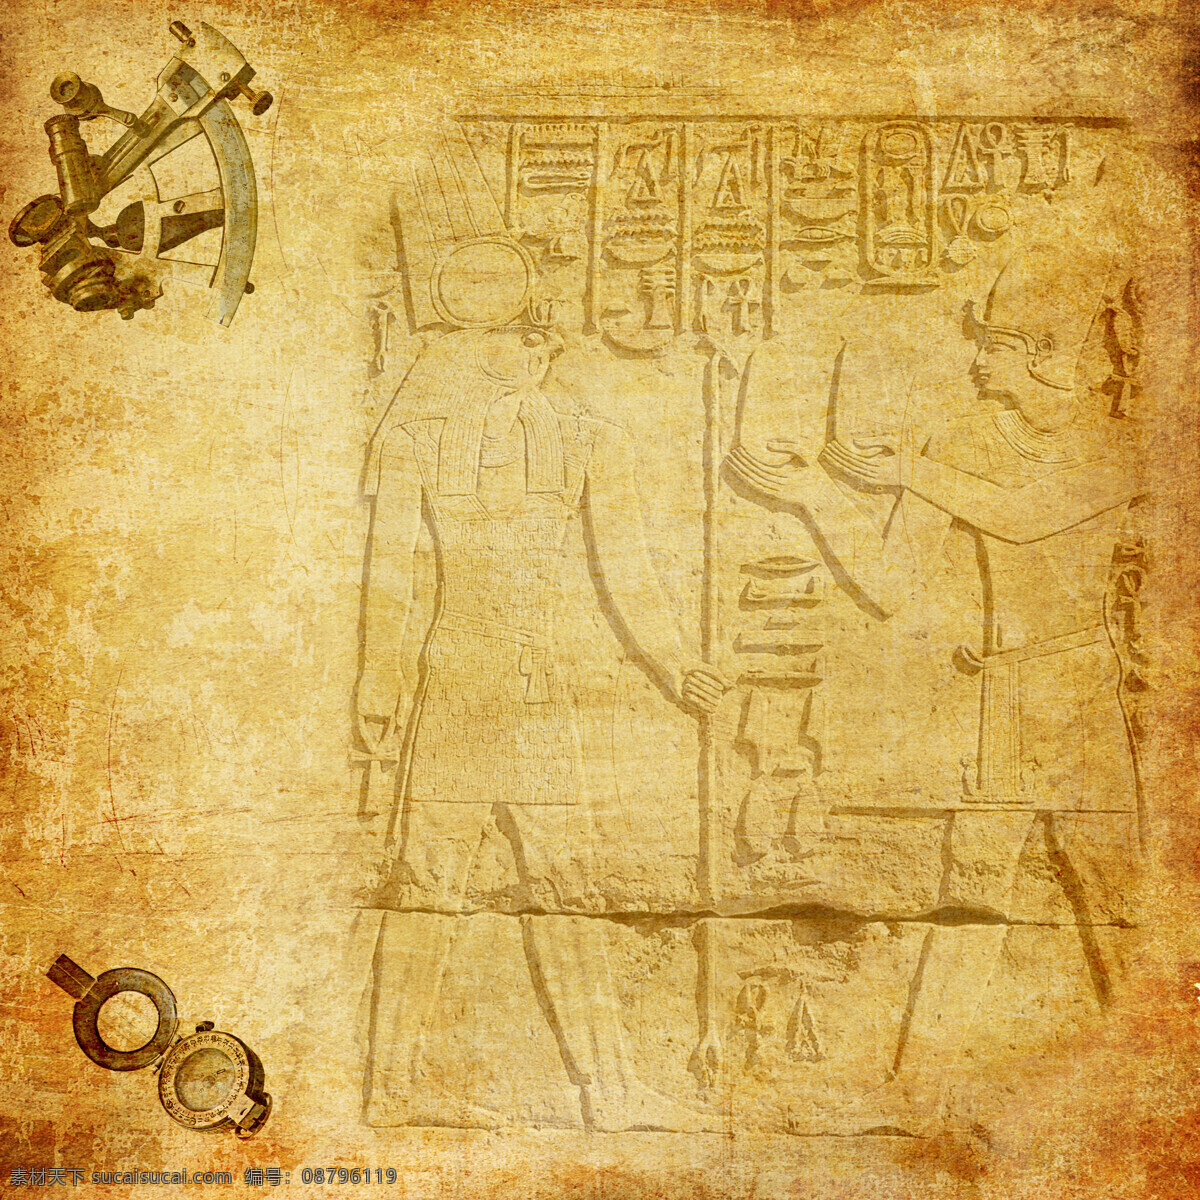 埃及图案背景 埃及法老 埃及王后 埃及女人 埃及传统图案 埃及图腾 埃及壁画 古埃及文化 其他艺术 文化艺术 黄色